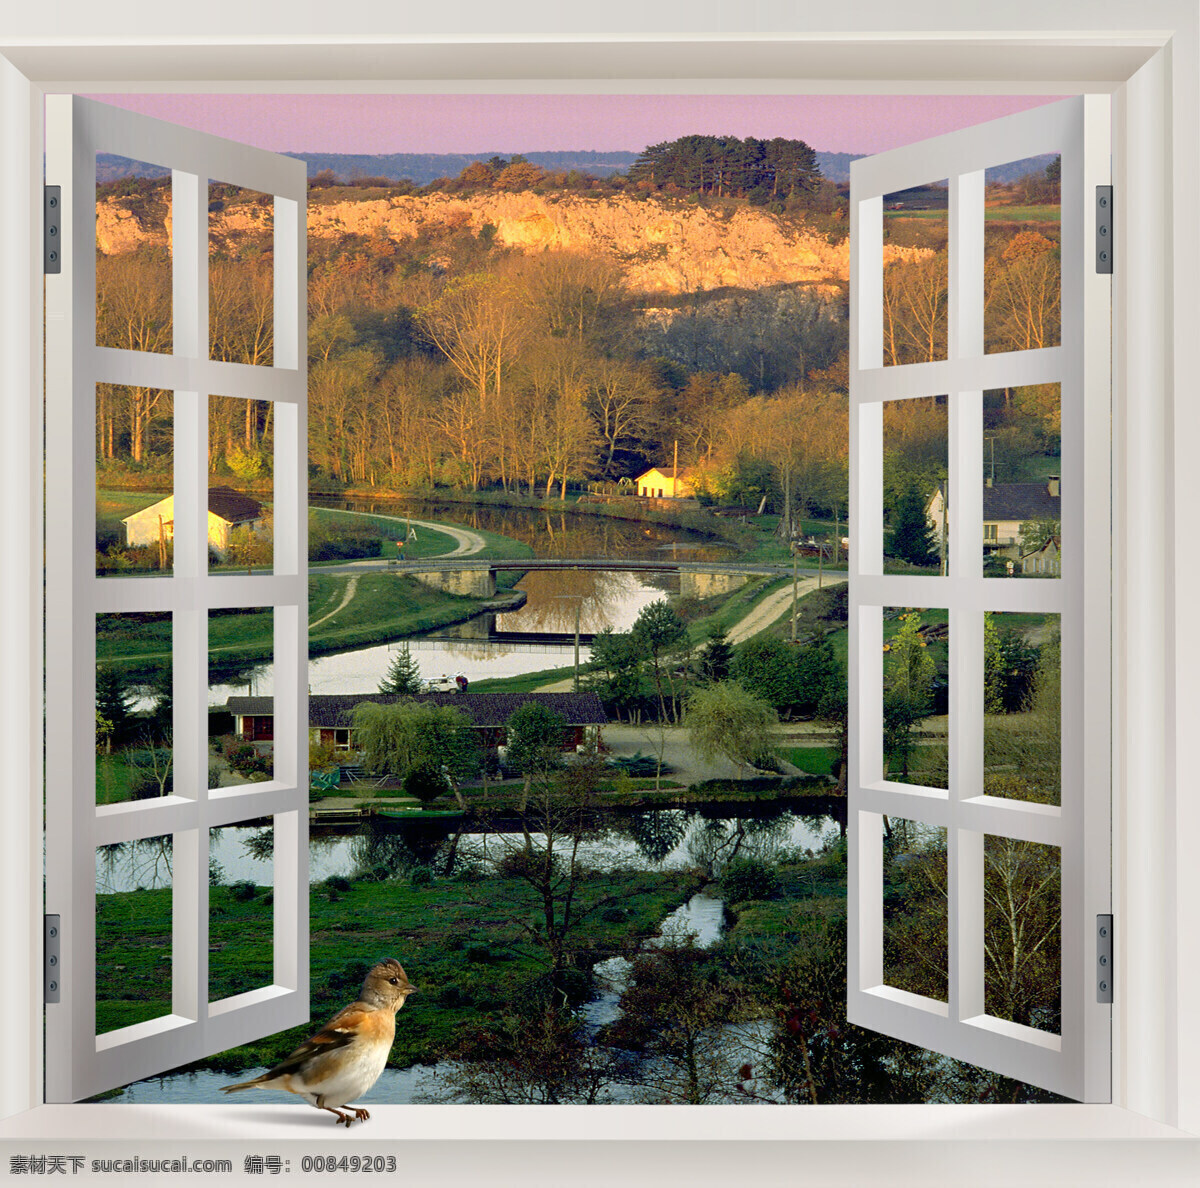 窗外风景 窗外 窗台 窗框 风景 自然景观 自然风光 自然风景 设计图库 白色窗户 小鸟 乡村美景 小河流水 夏季美景 绿树 房屋 梦境